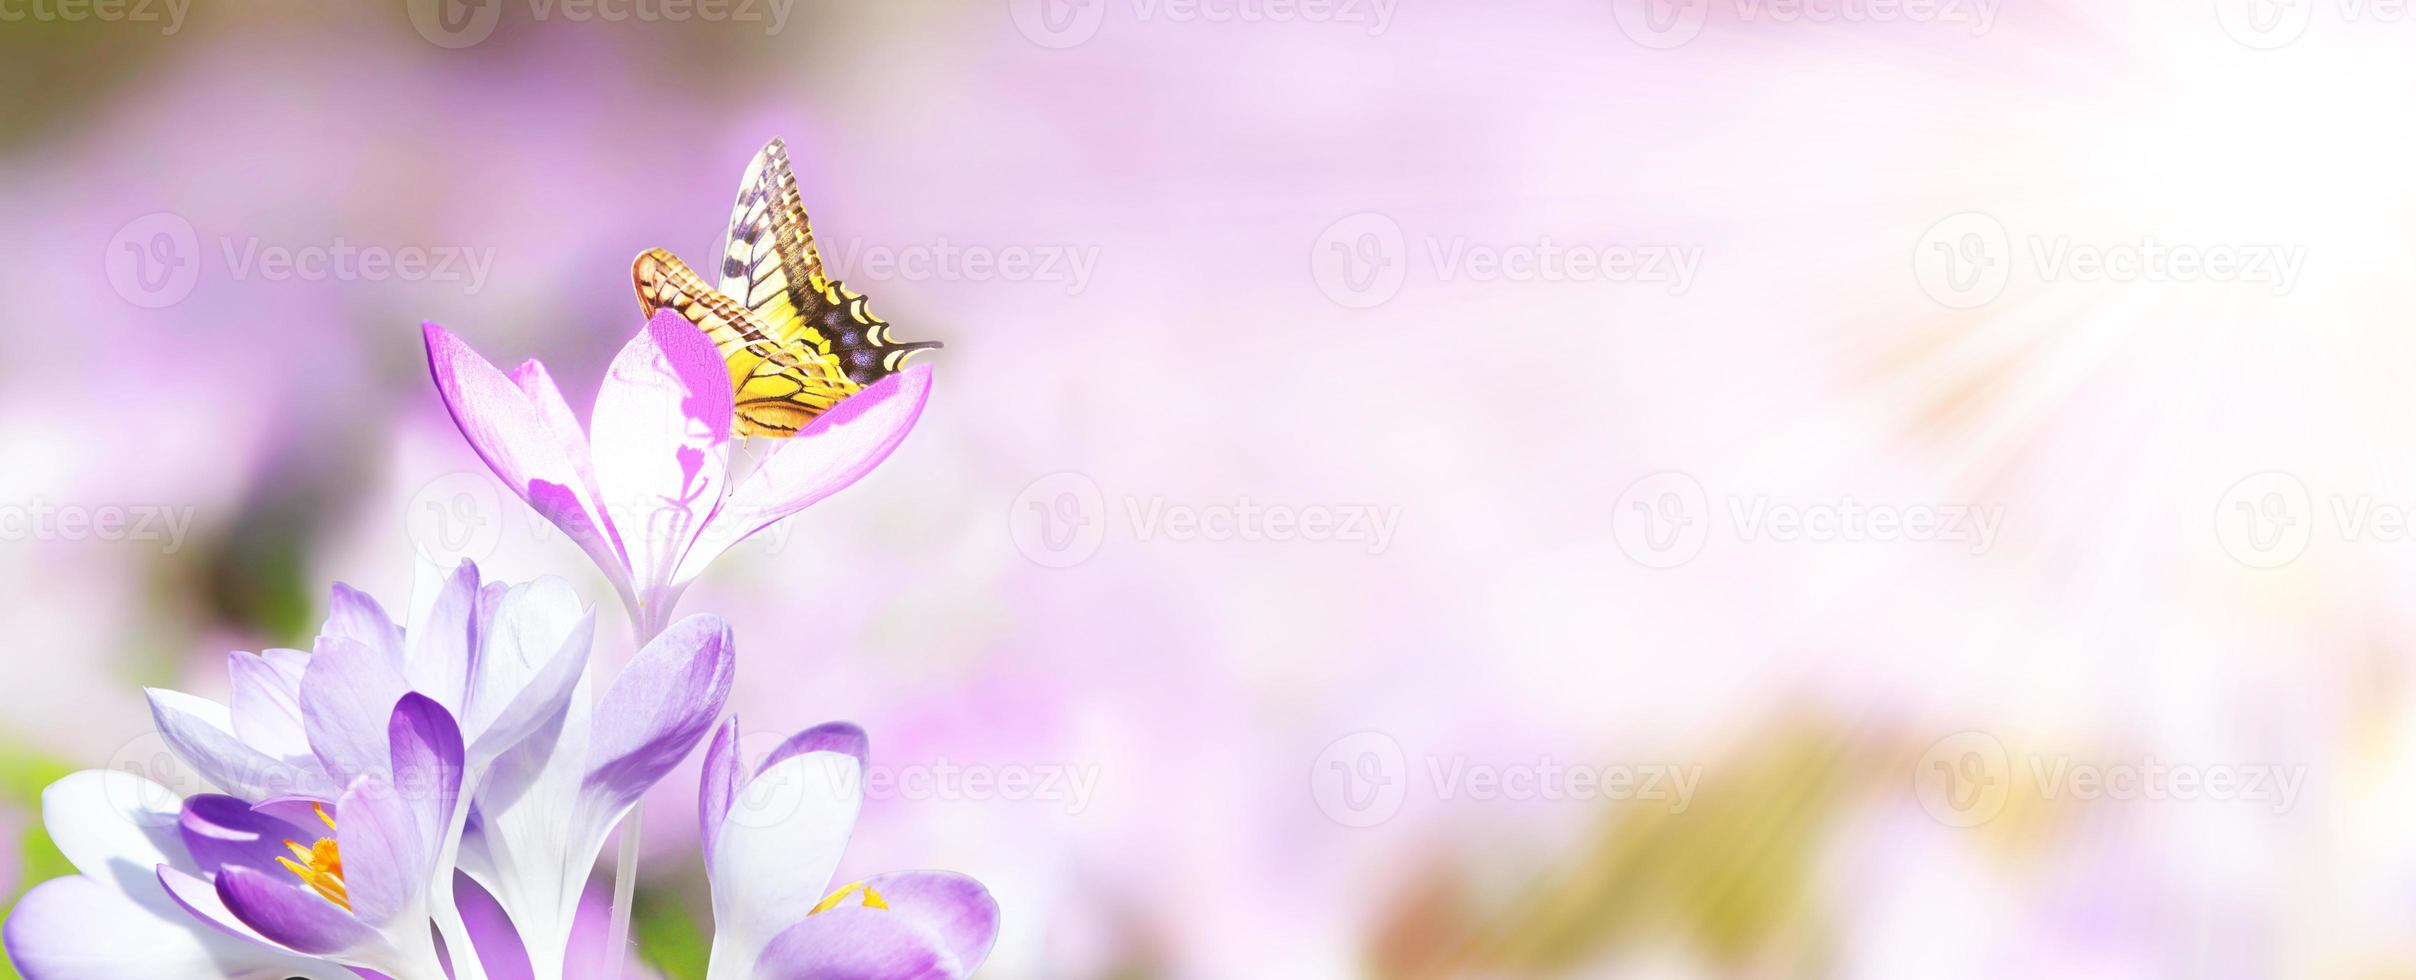 krokus bloeit in een zachte focus op een zonnige lentedag met vlinder foto